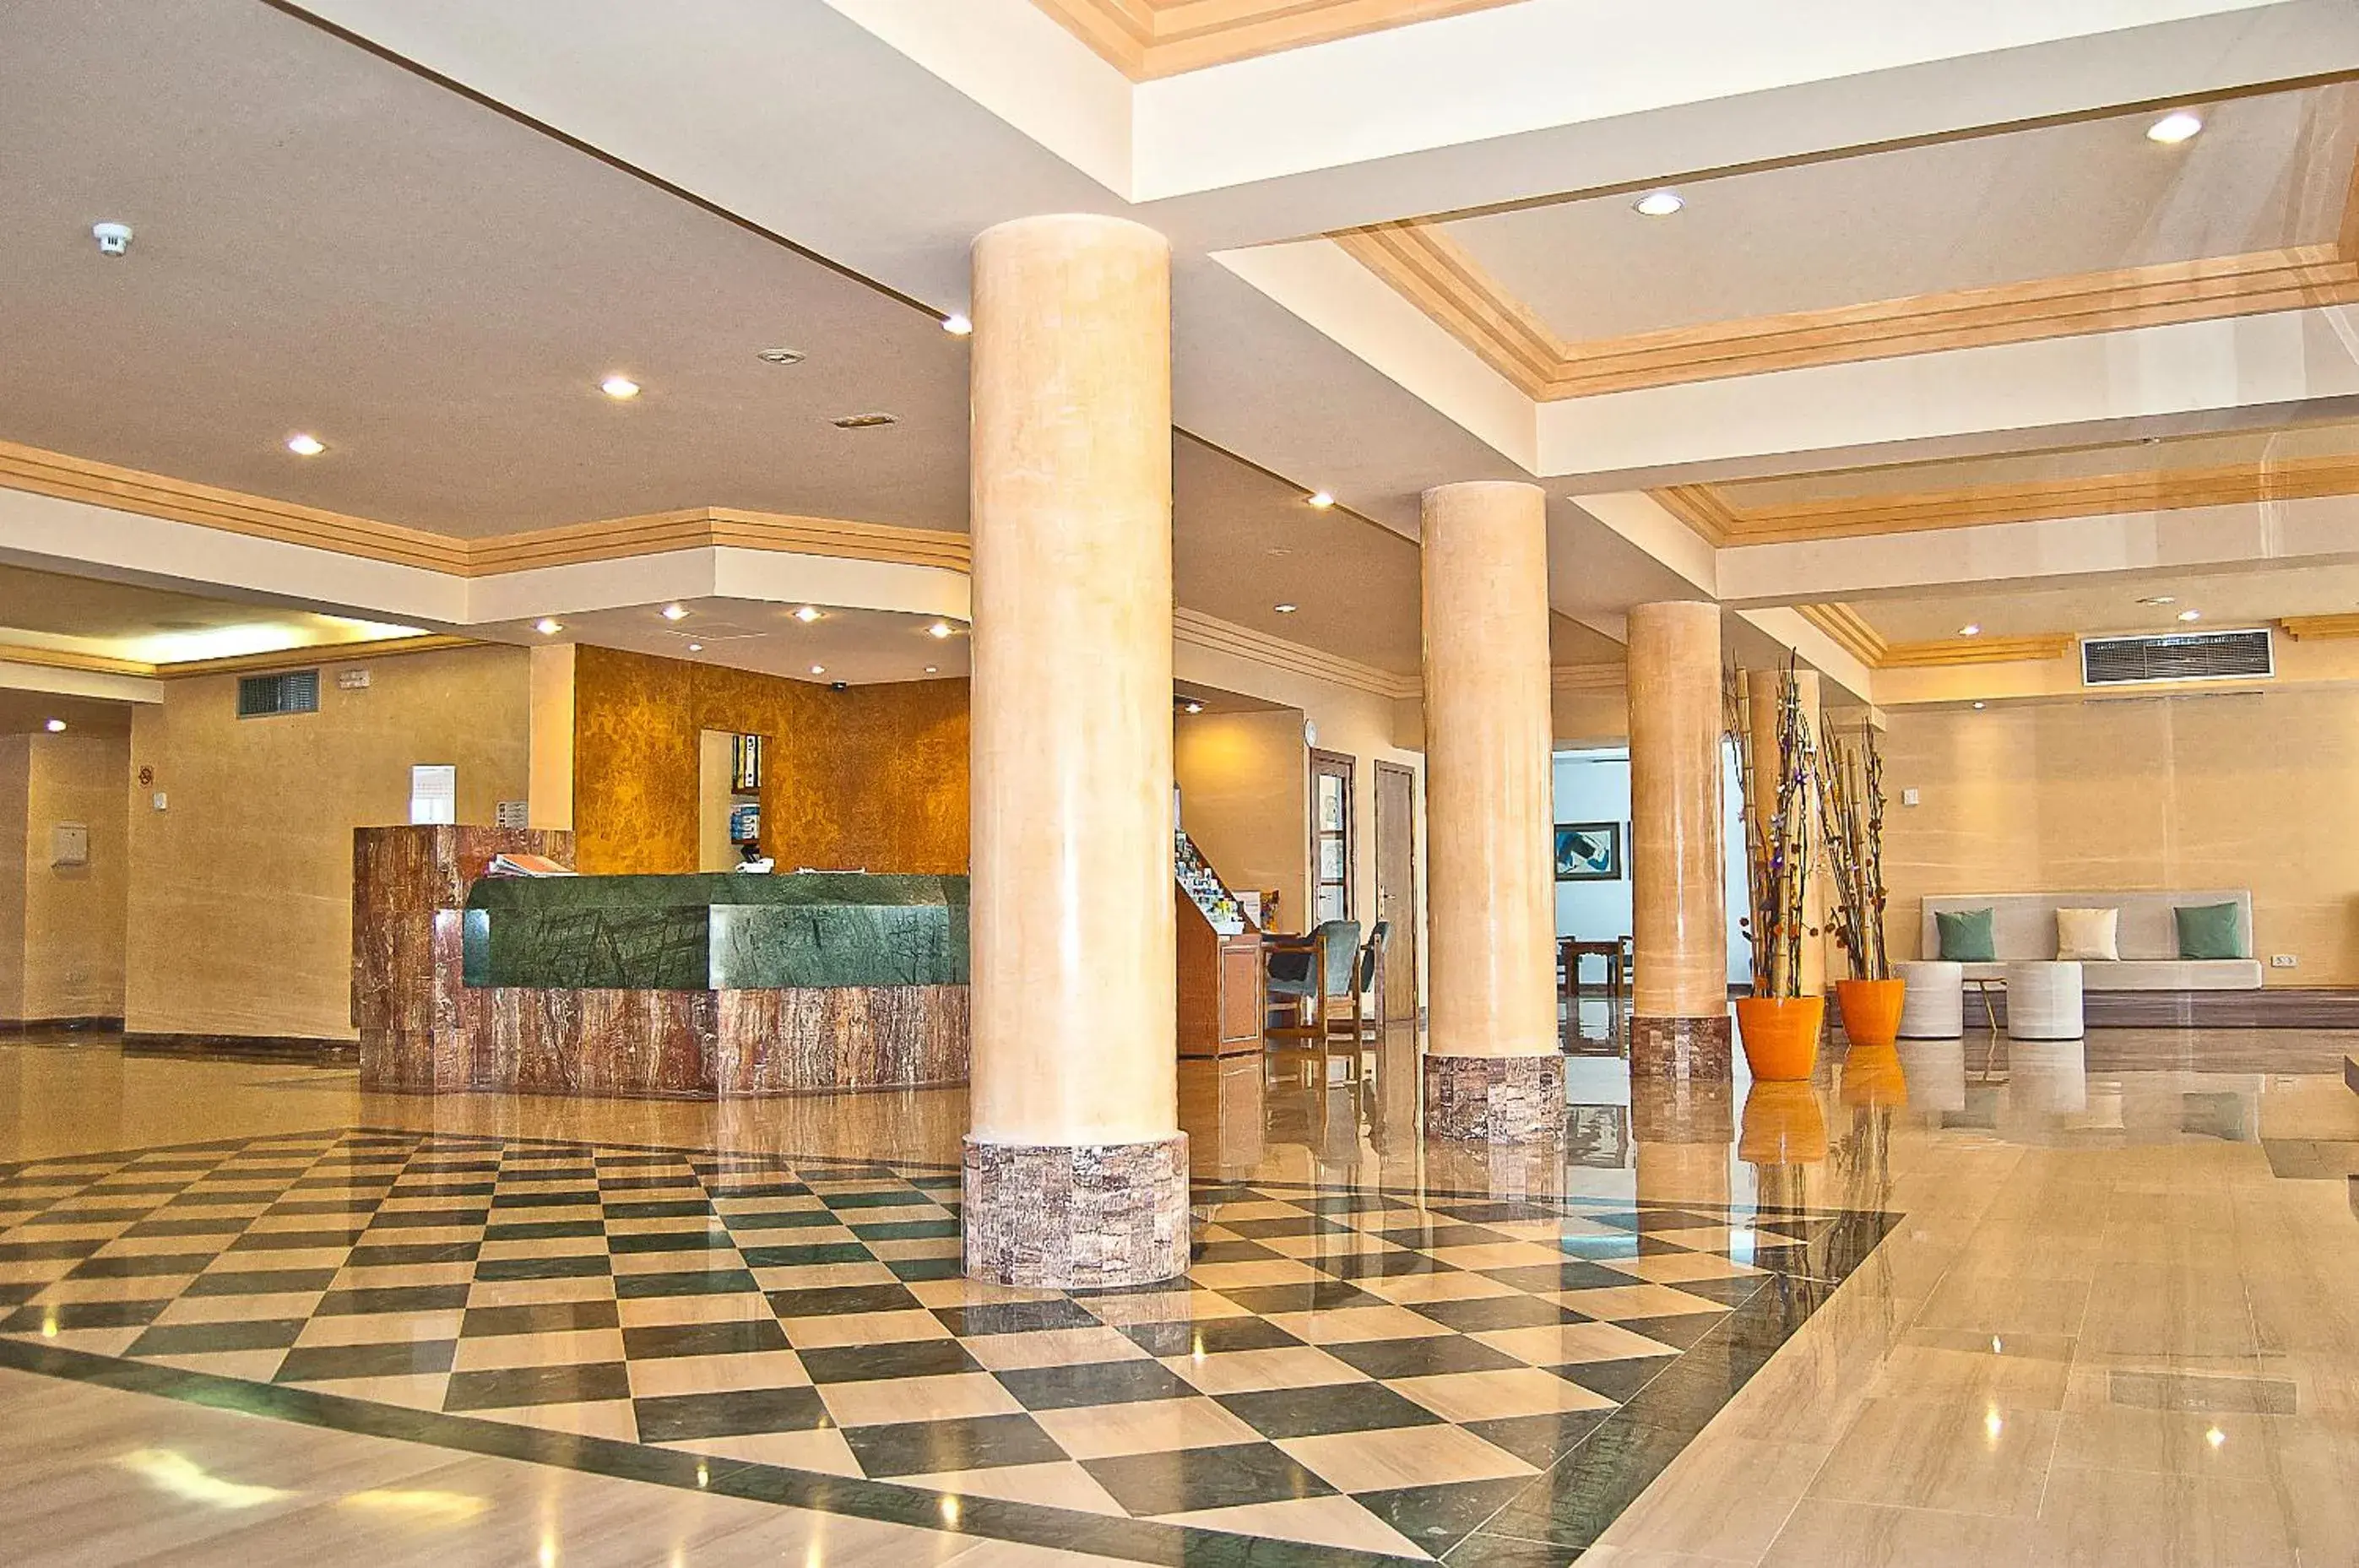 Lobby or reception, Lobby/Reception in BQ Sarah